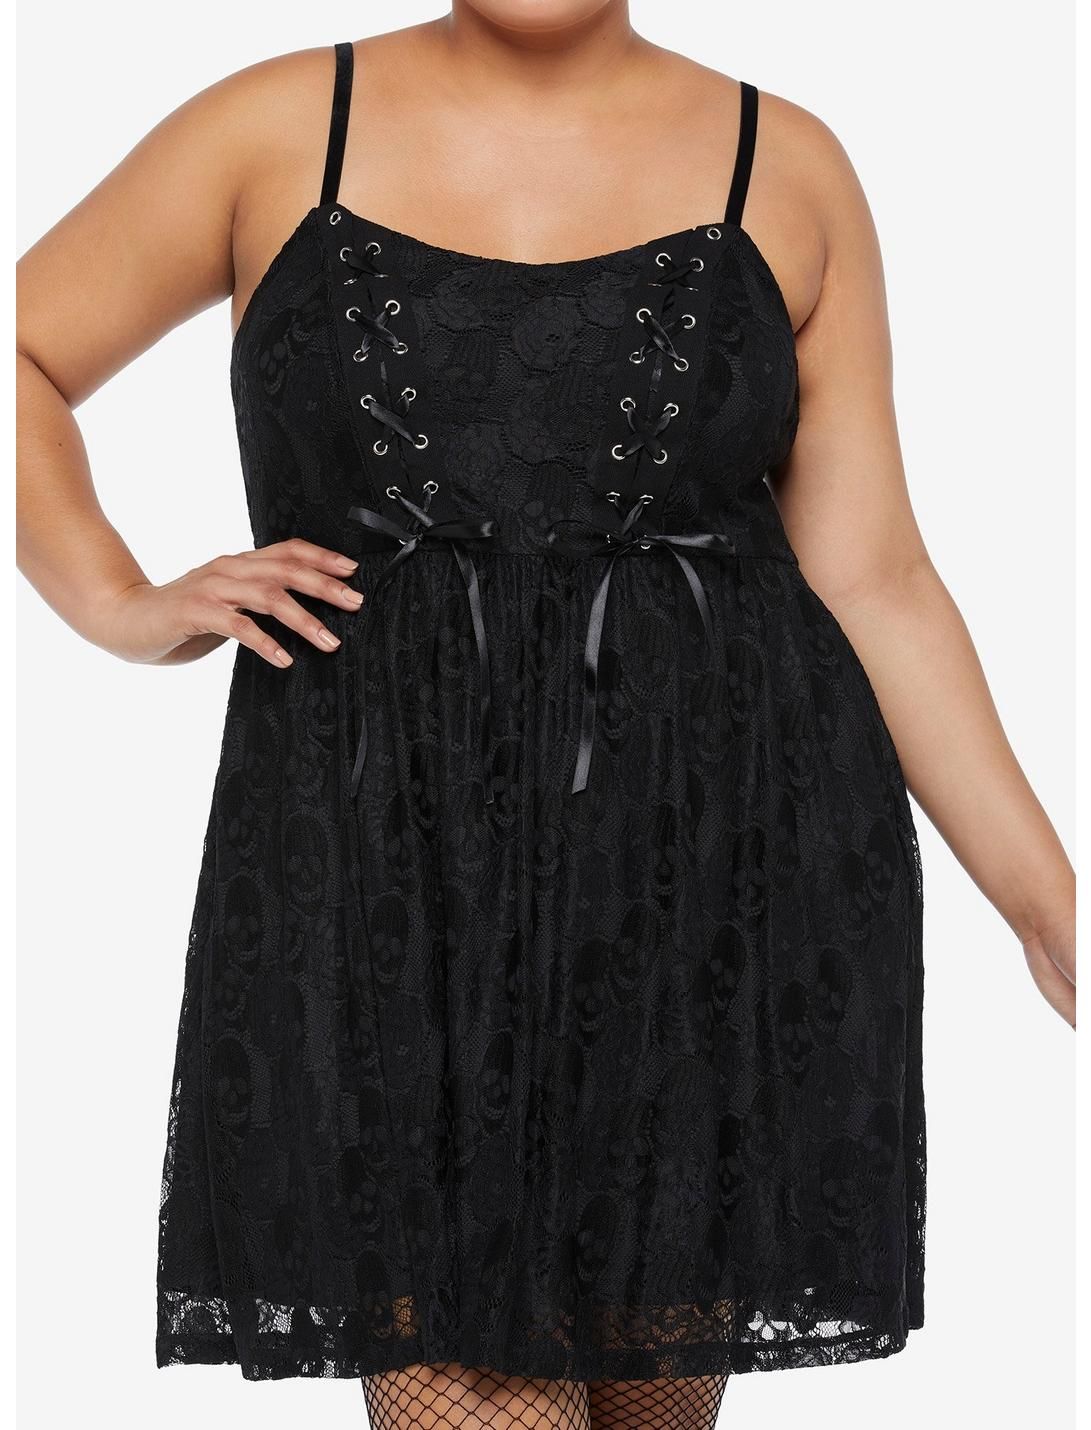 Black Skull Lace Dress Plus Size | Hot Topic